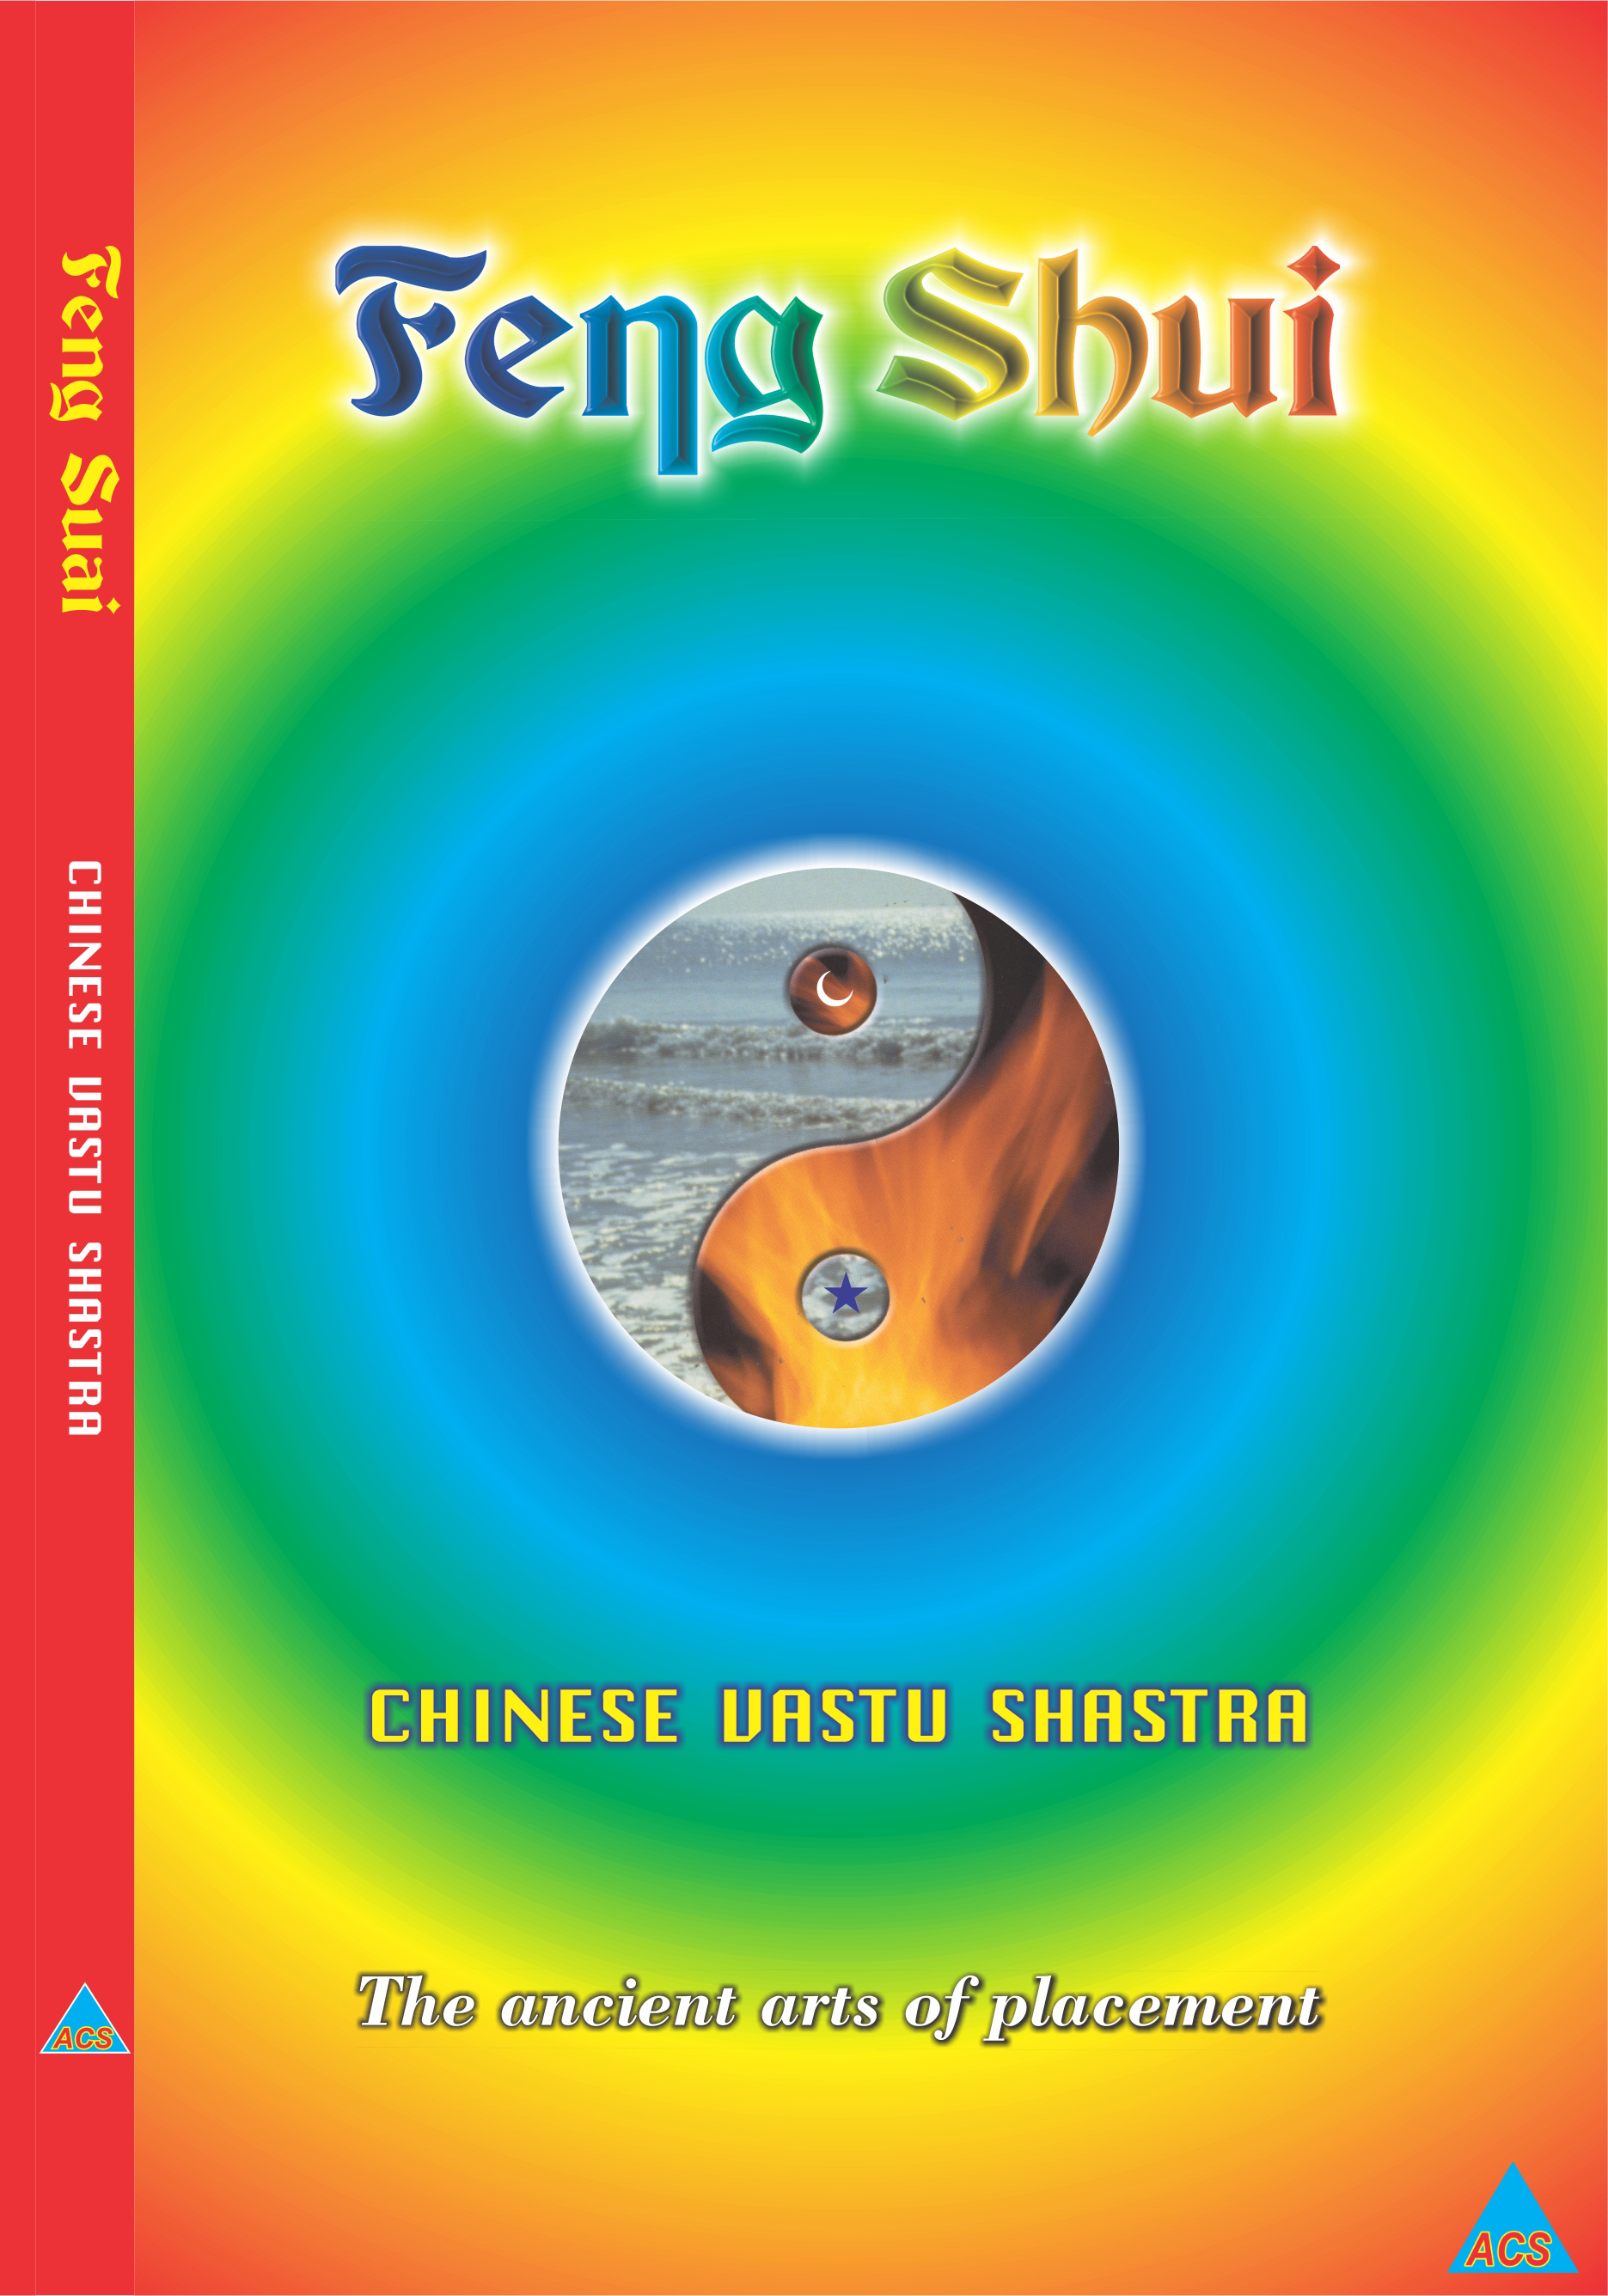 ACS Feng -Shui / Joshi & Choudhary Book - English 